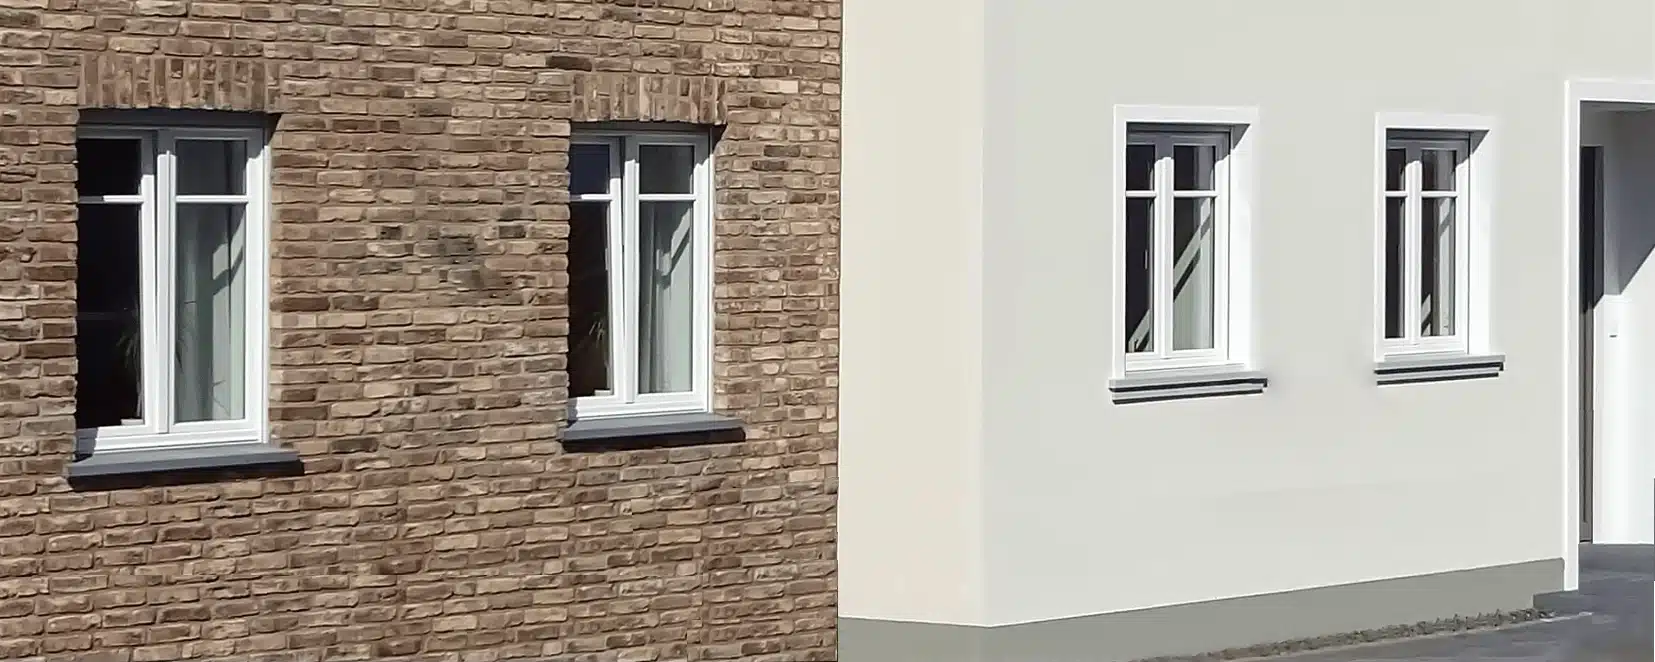 Schöne Betonfensterbänke